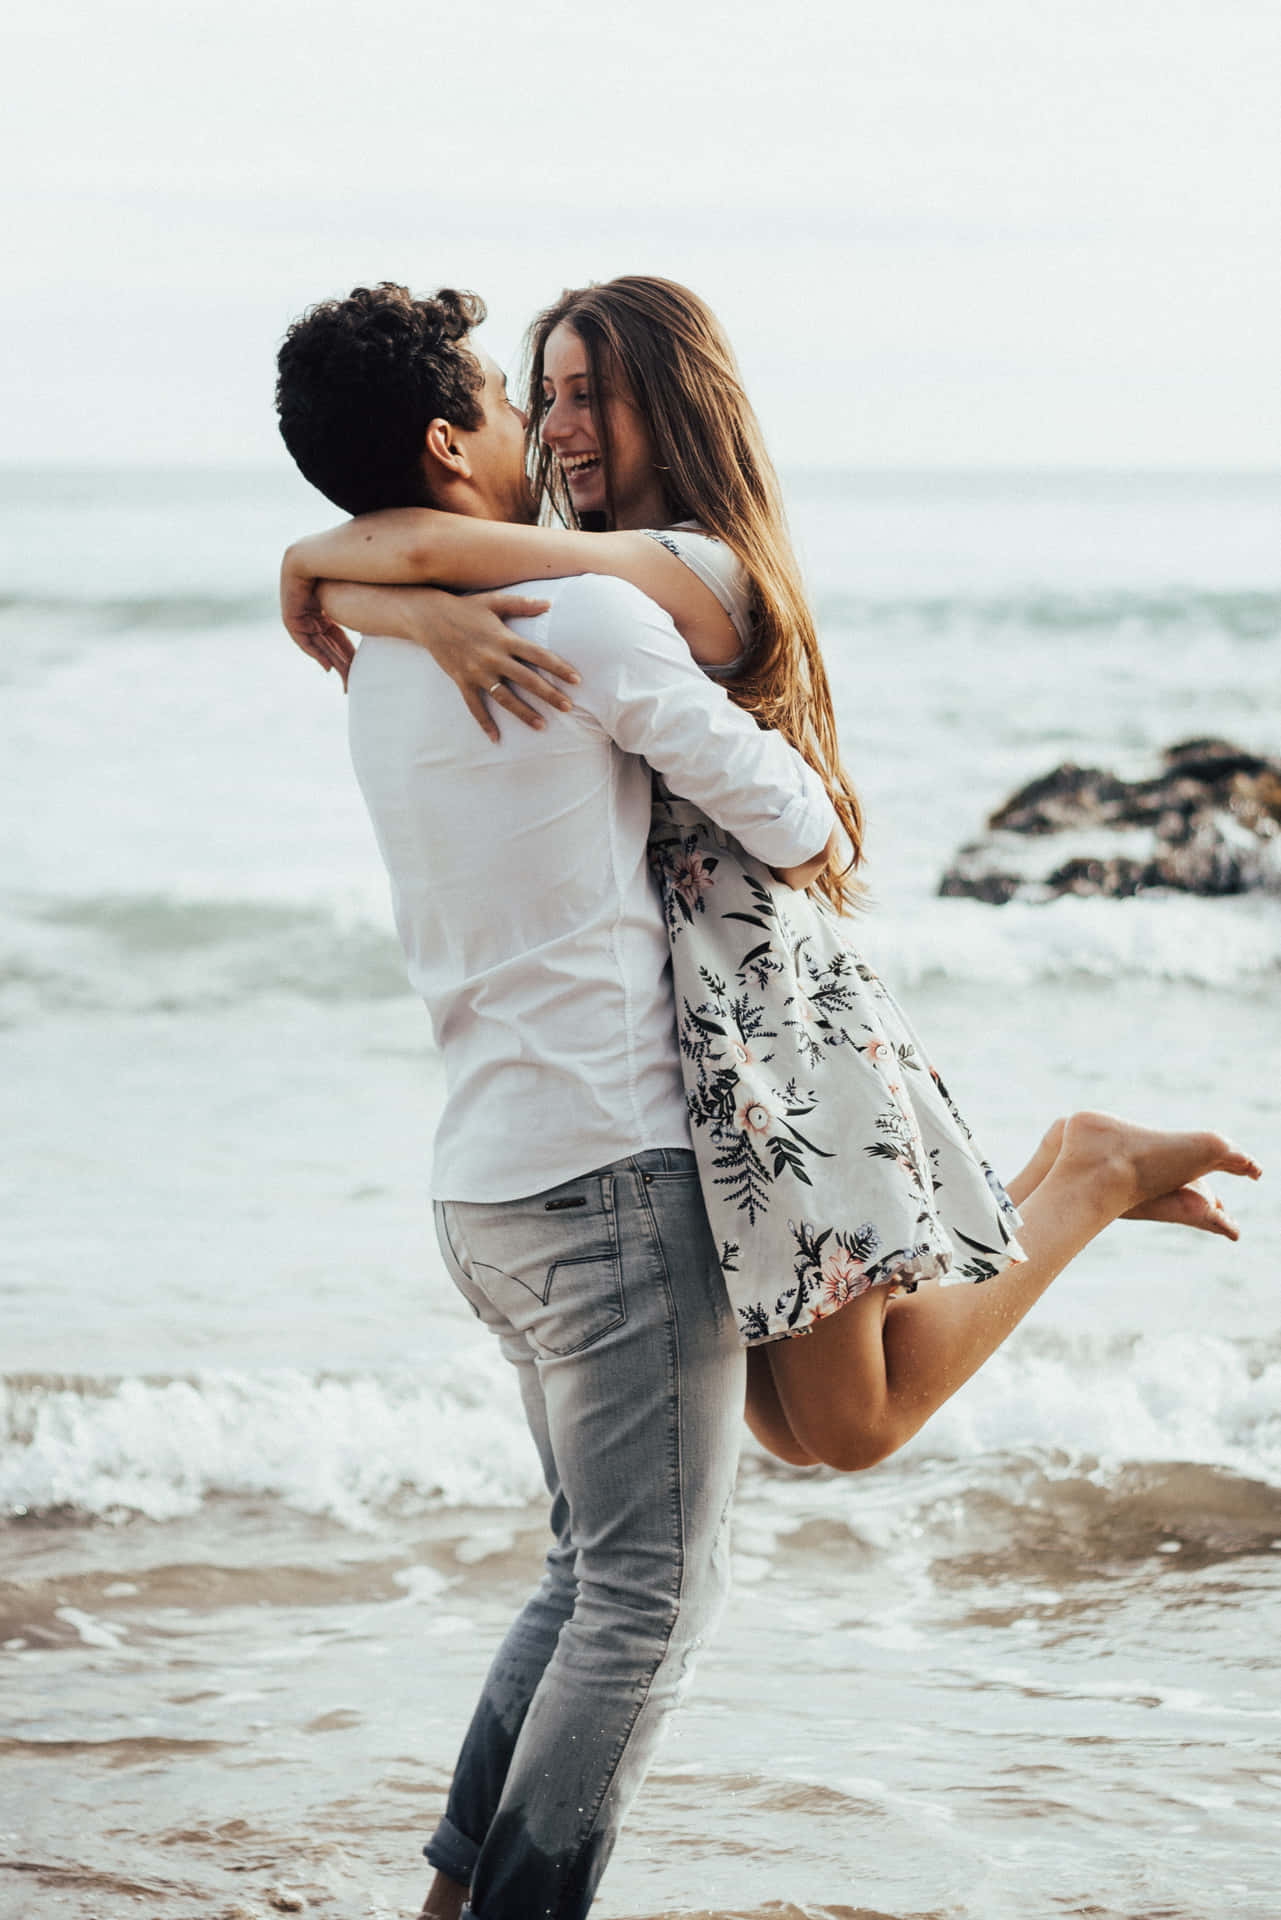 in Romantic Scene - Et par på stranden kramme partner i romantisk scene Wallpaper